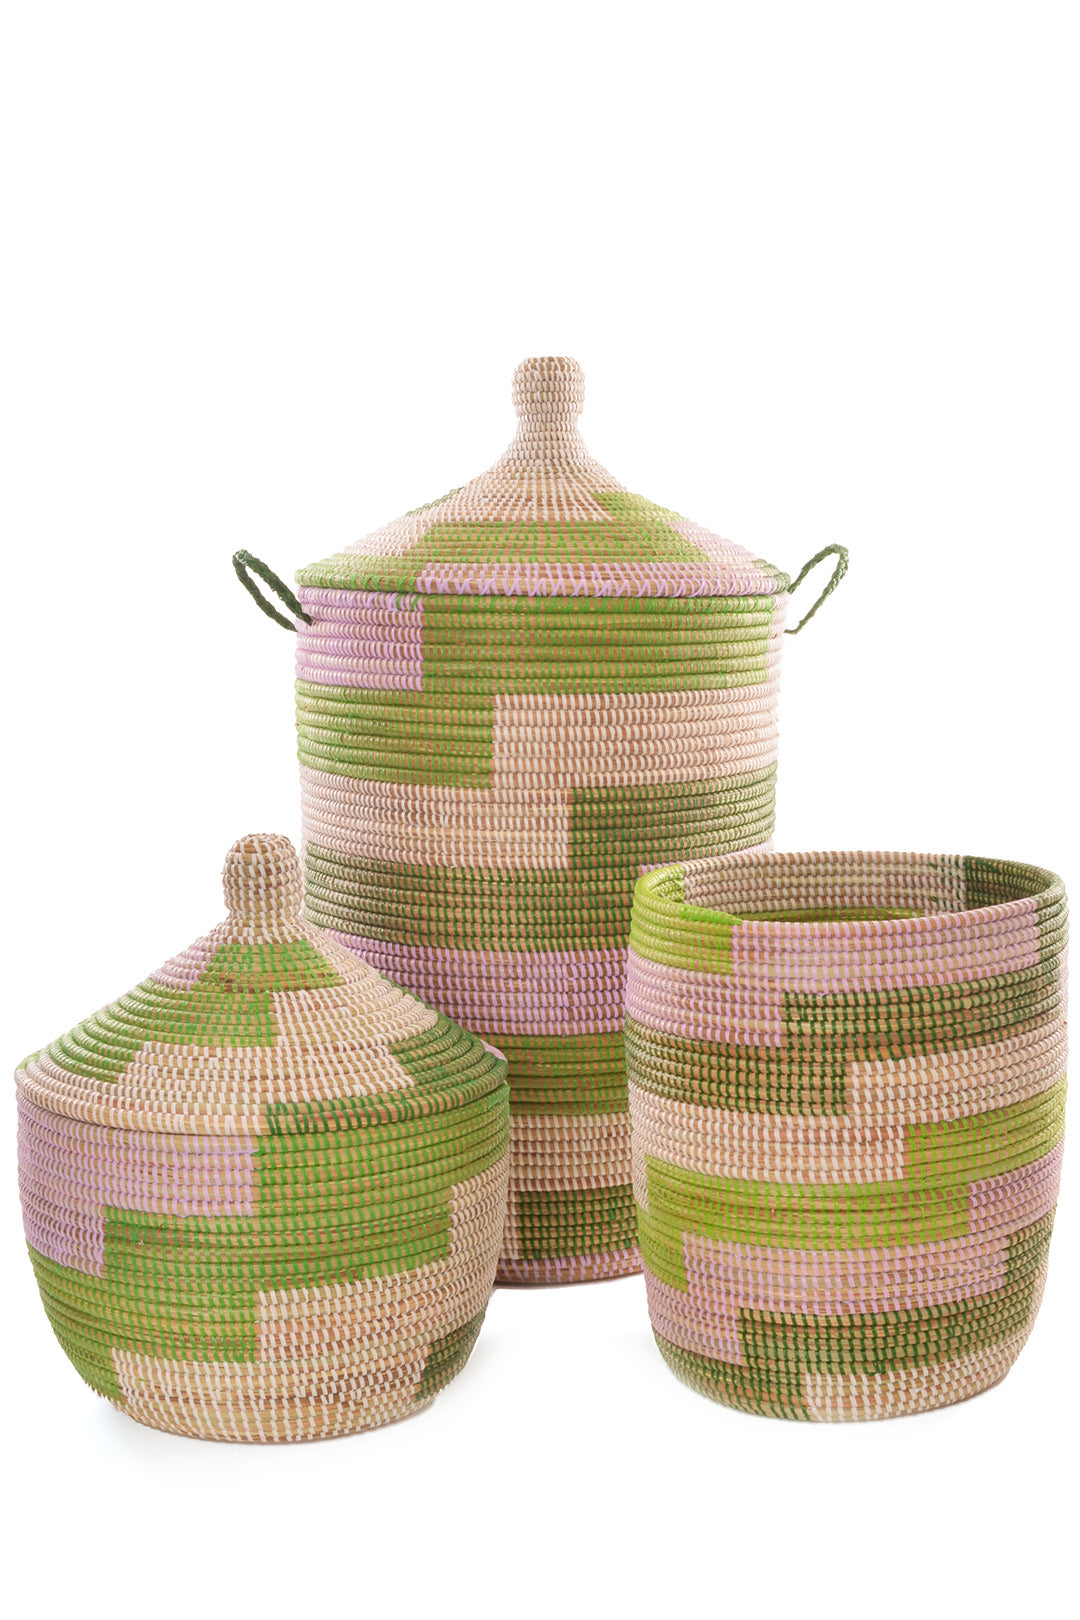 Green, White & Lavender Hamper & Baskets Set